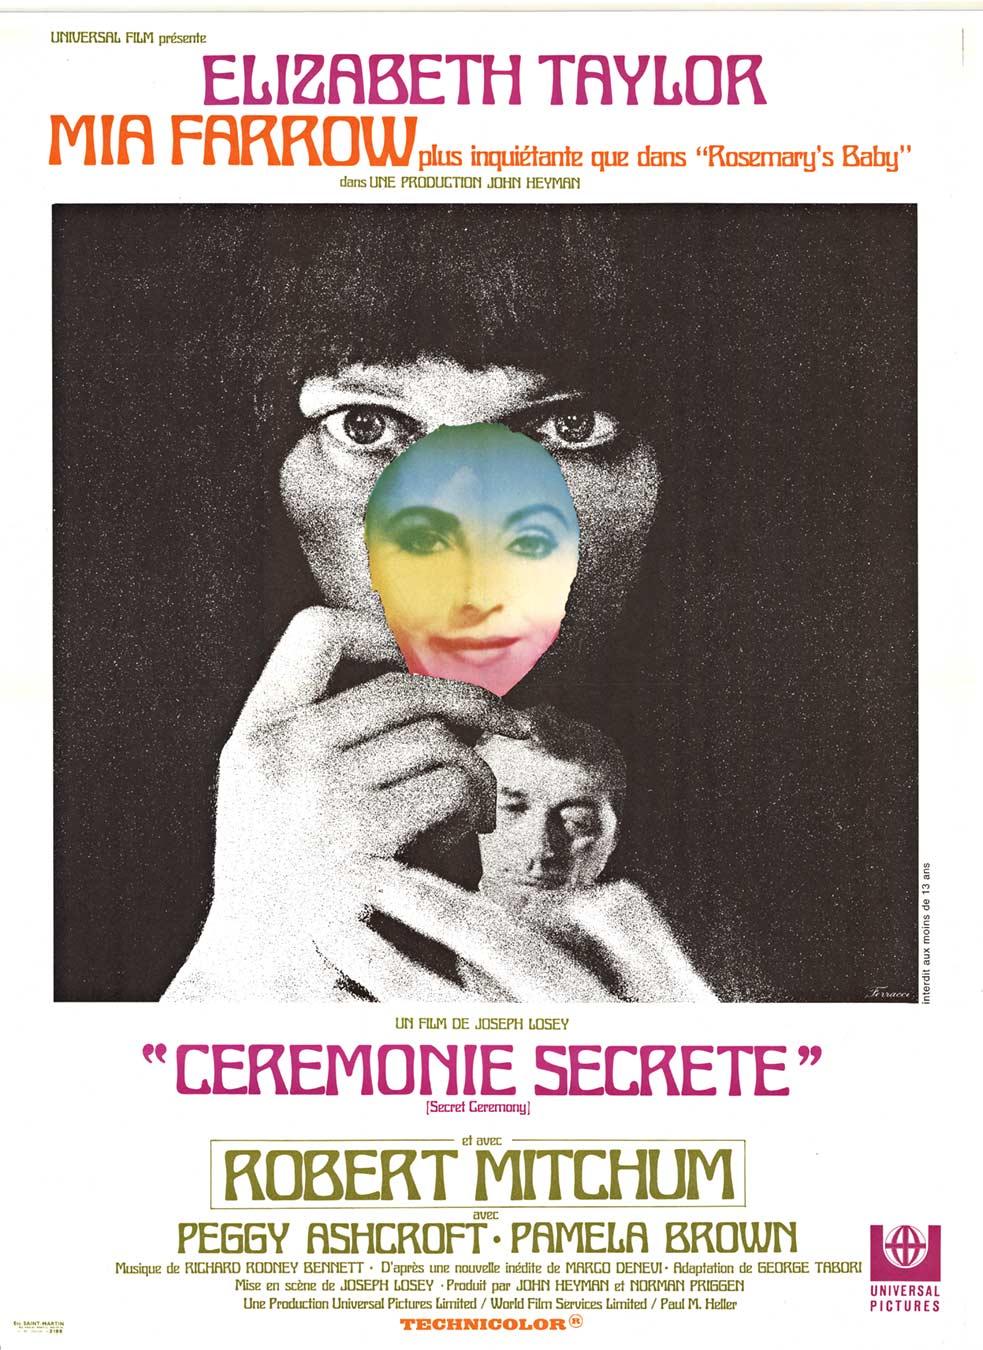 René Ferracci Portrait Print - Original 'Secret Ceremony' or "Ceremonie Secrete" vintage movie poster